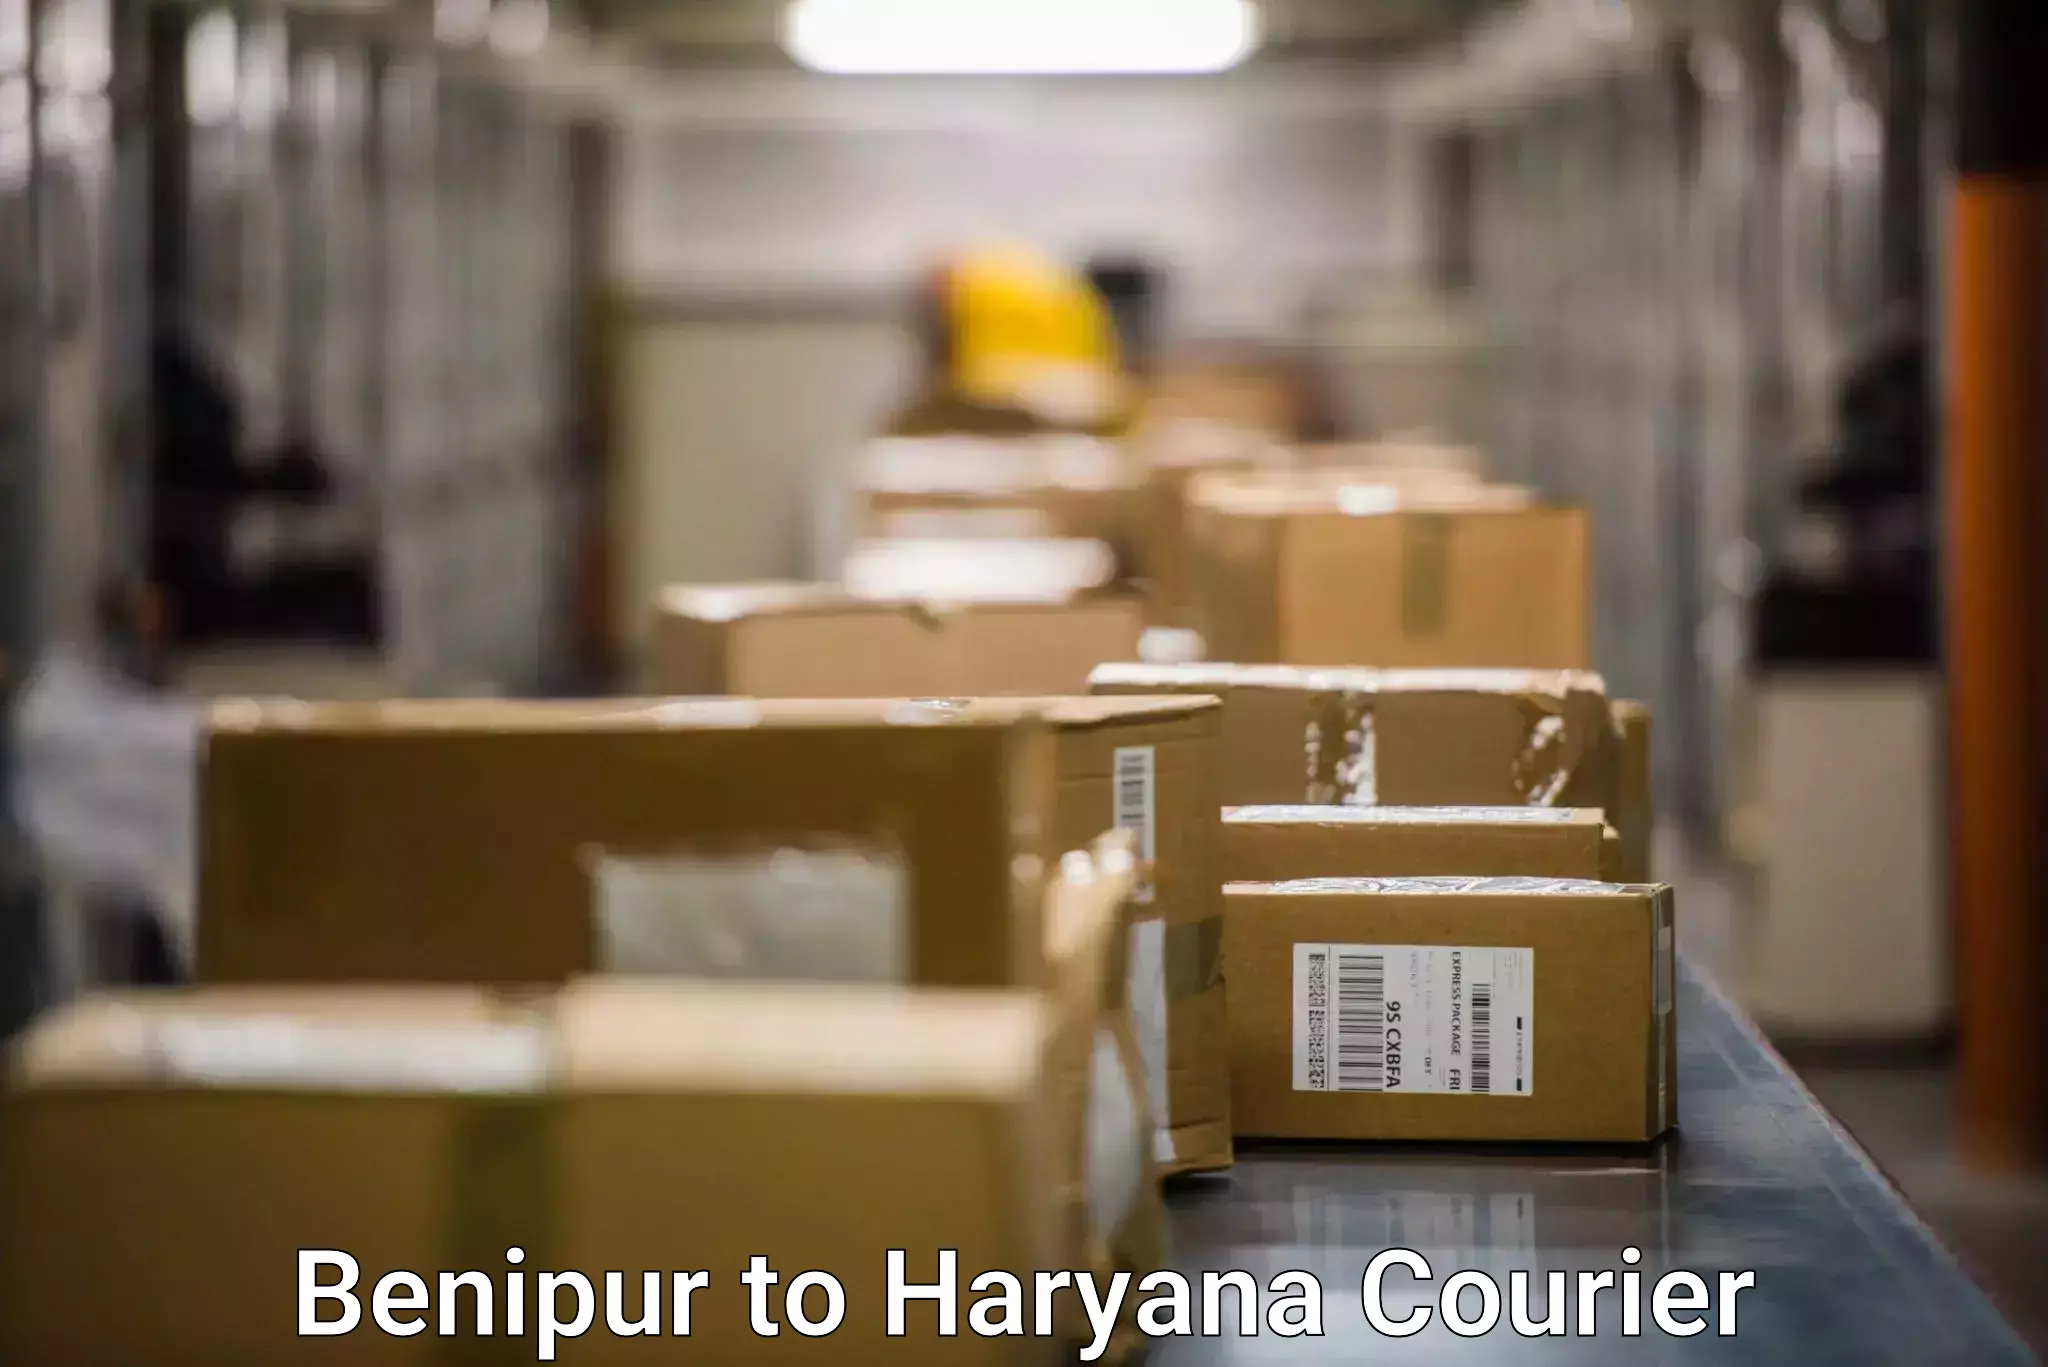 International courier networks Benipur to Kurukshetra